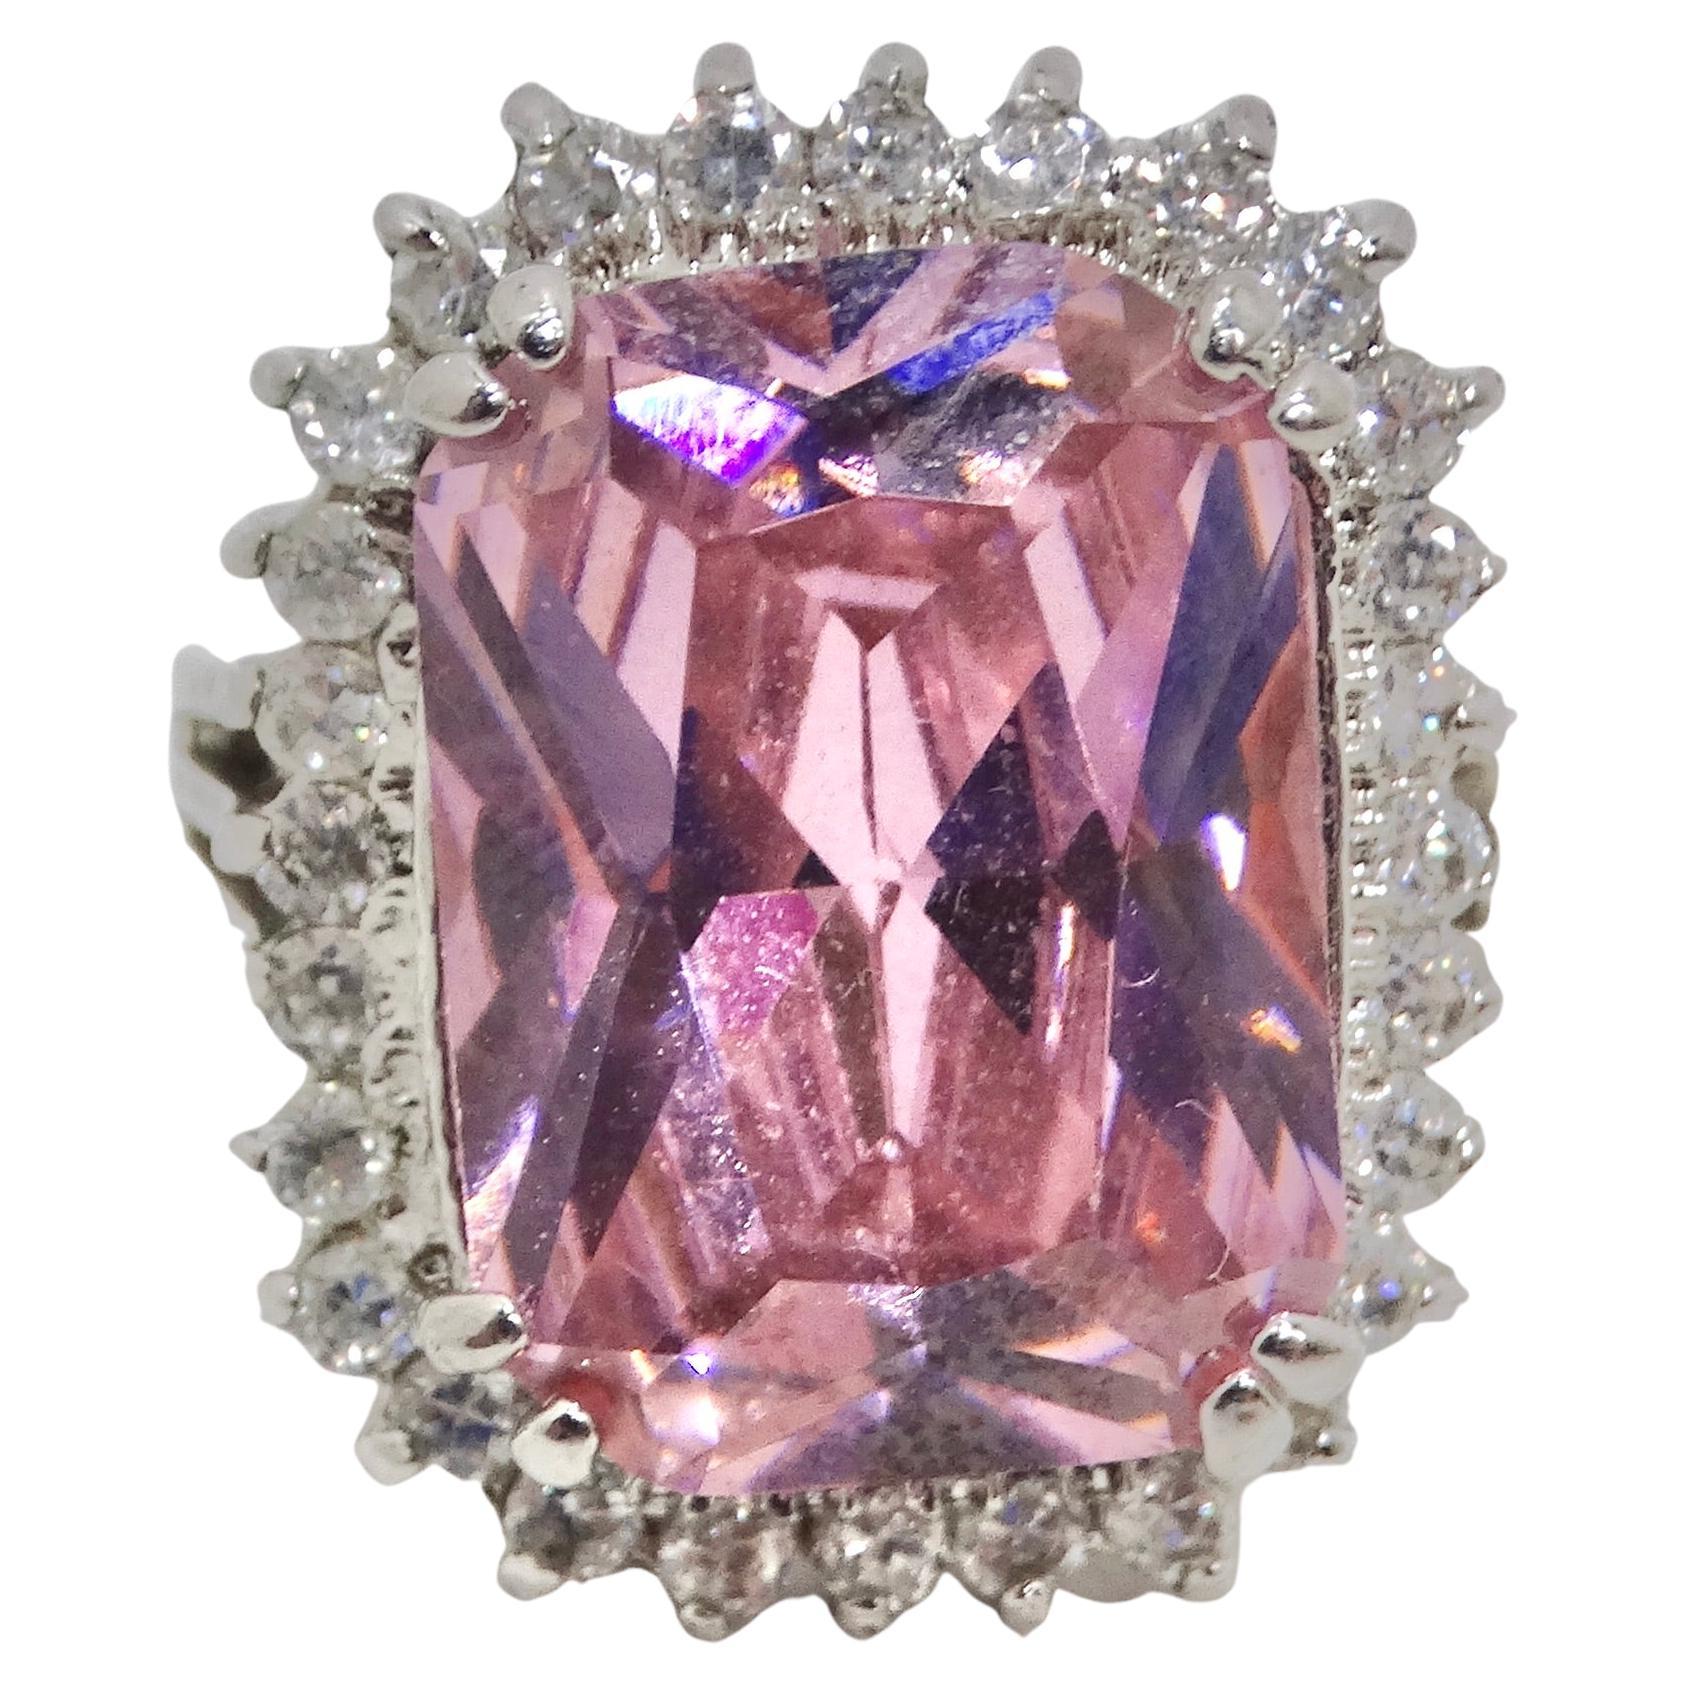 Unser schillernder 1990s Pink Synthetic Sapphire Silver Ring ist ein kühnes und lebhaftes Schmuckstück, das perfekt für alle ist, die die Farbe Pink lieben. Dieser Ring verbindet die Eleganz eines synthetischen Saphirs mit dem Funkeln synthetischer